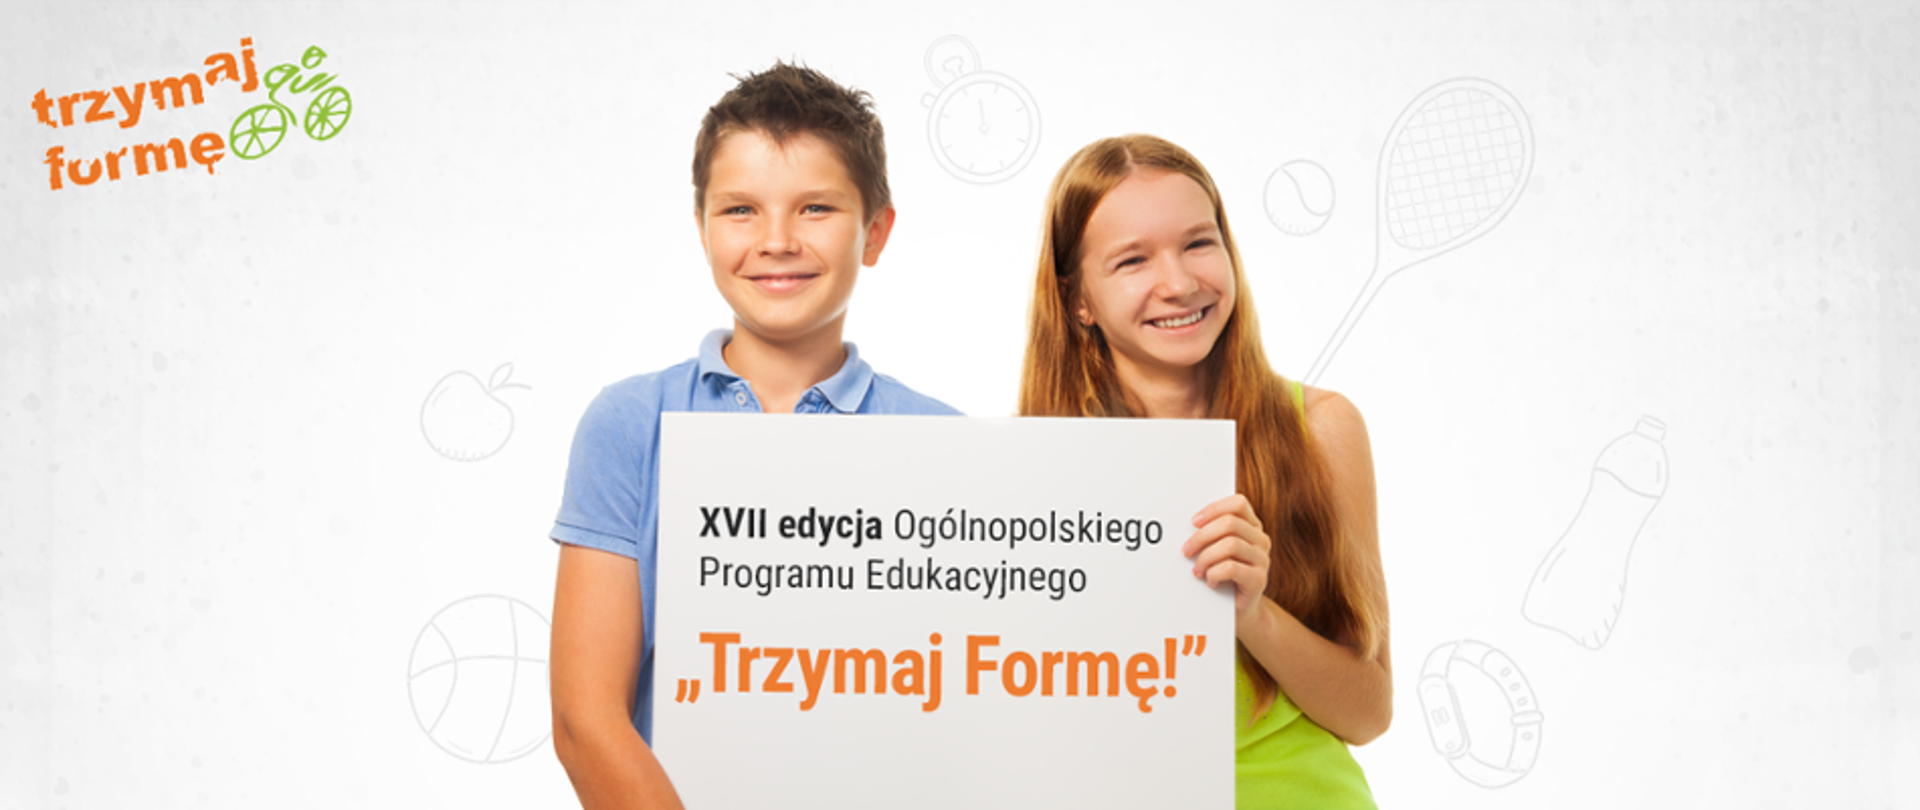 baner promujący XVII edycję Ogólnopolskiego Programu Edukacyjnego 'Trzymaj formę!";,na białym tle, dwoje uśmiechniętych dzieci (chłopak i dziewczyna) trzyma tabliczkę z tytułem programu" 